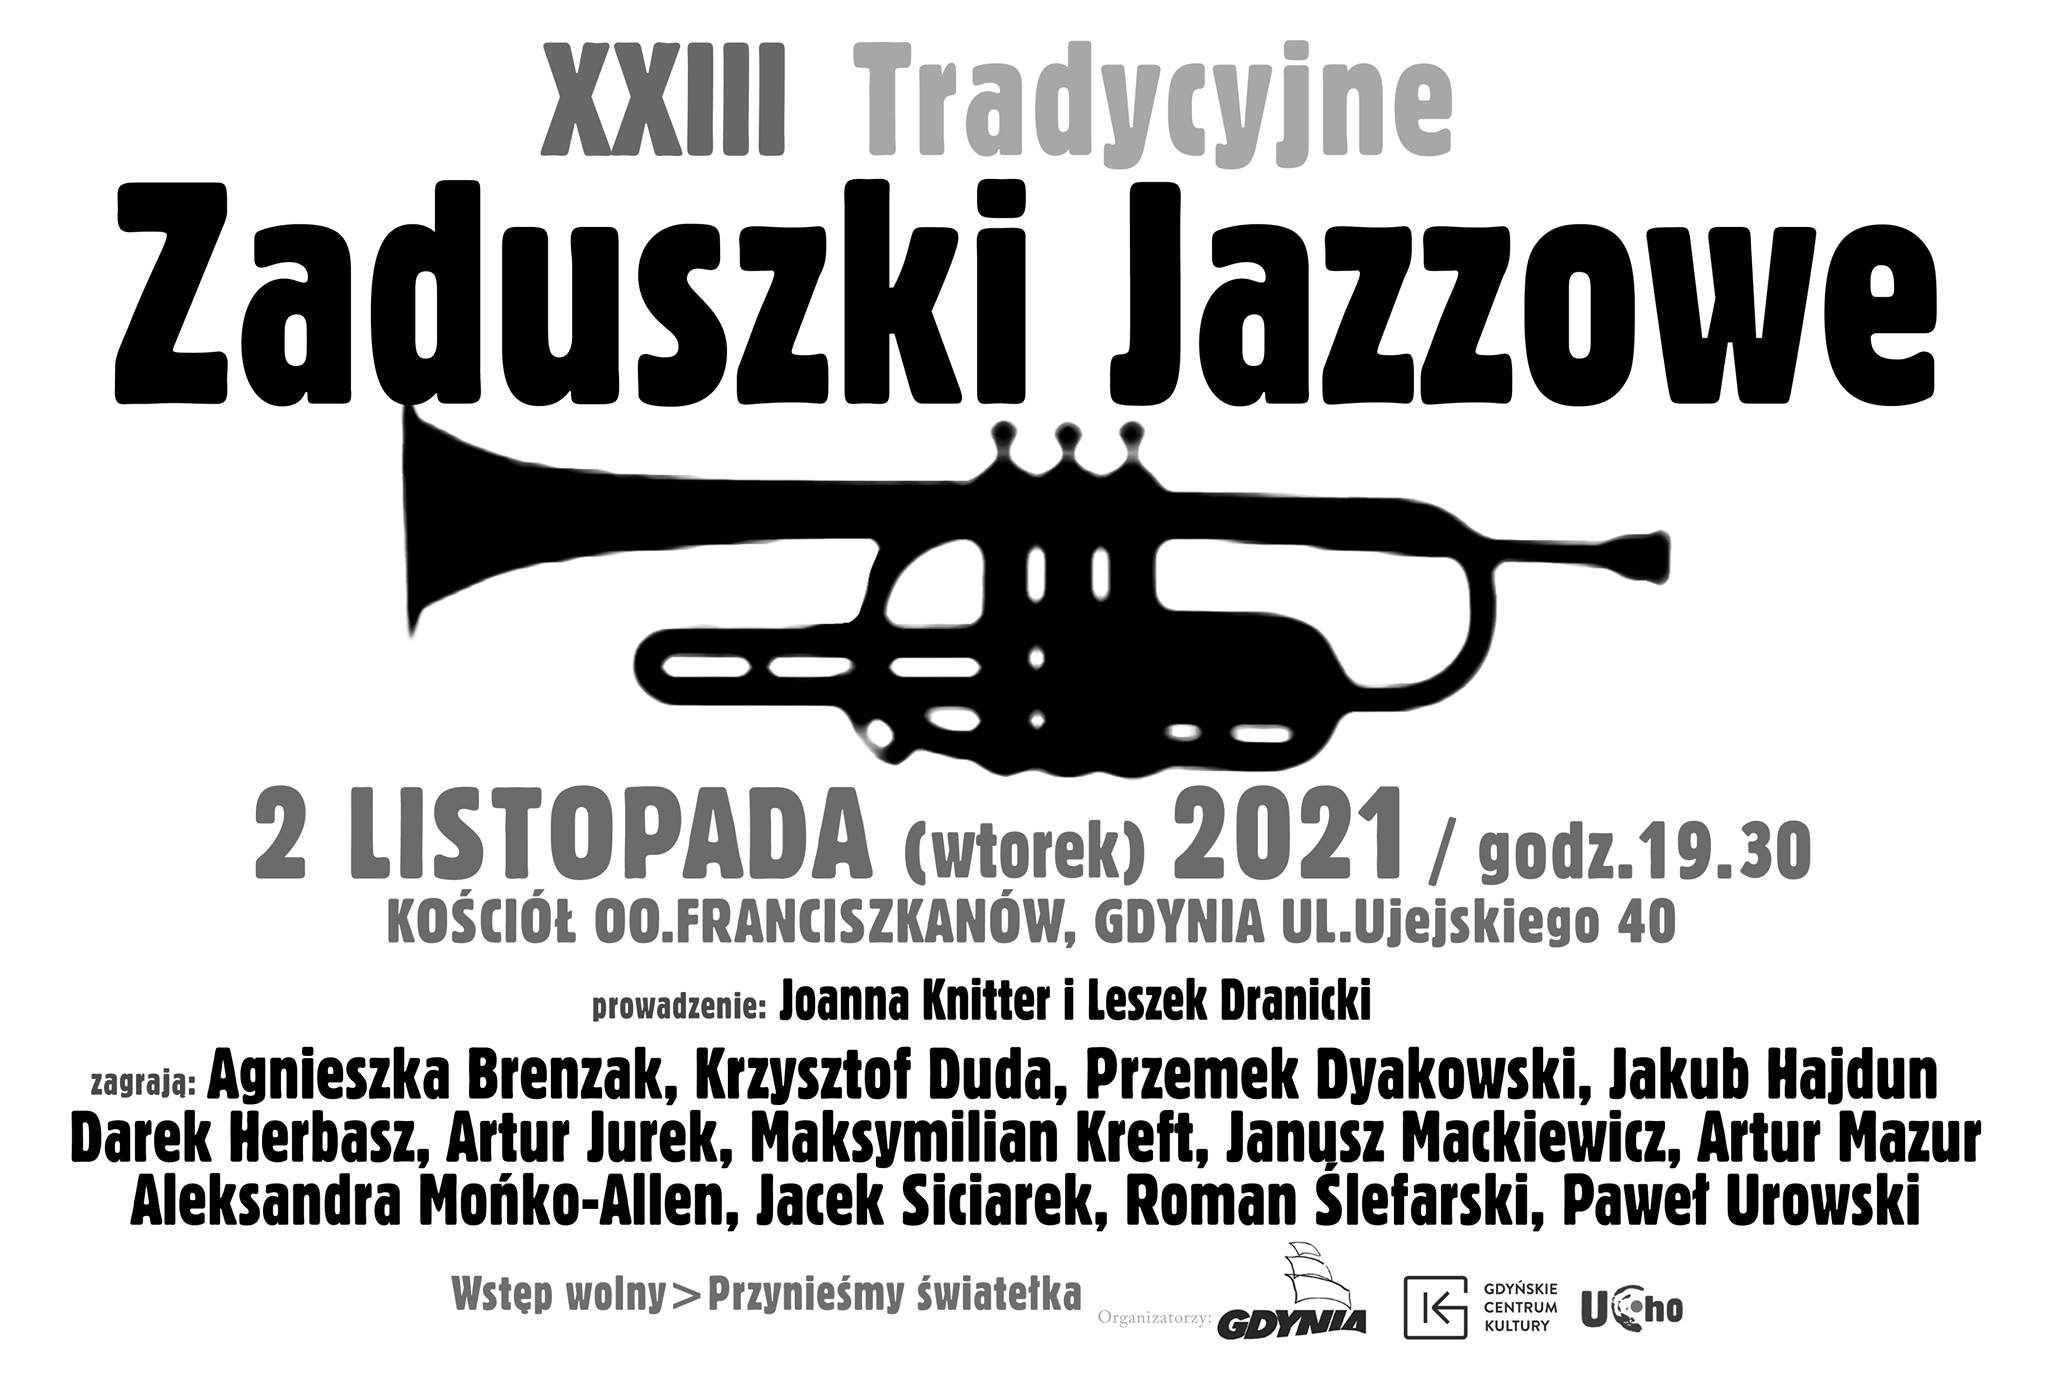 Czarno-biały plakat promujący XXIII Zaduszki Jazzowe. Na środku grafiki - saksofon. Powyżej nazwa wydarzenia, a poniżej miejsce koncertu i lista artystów // mat.prasowe